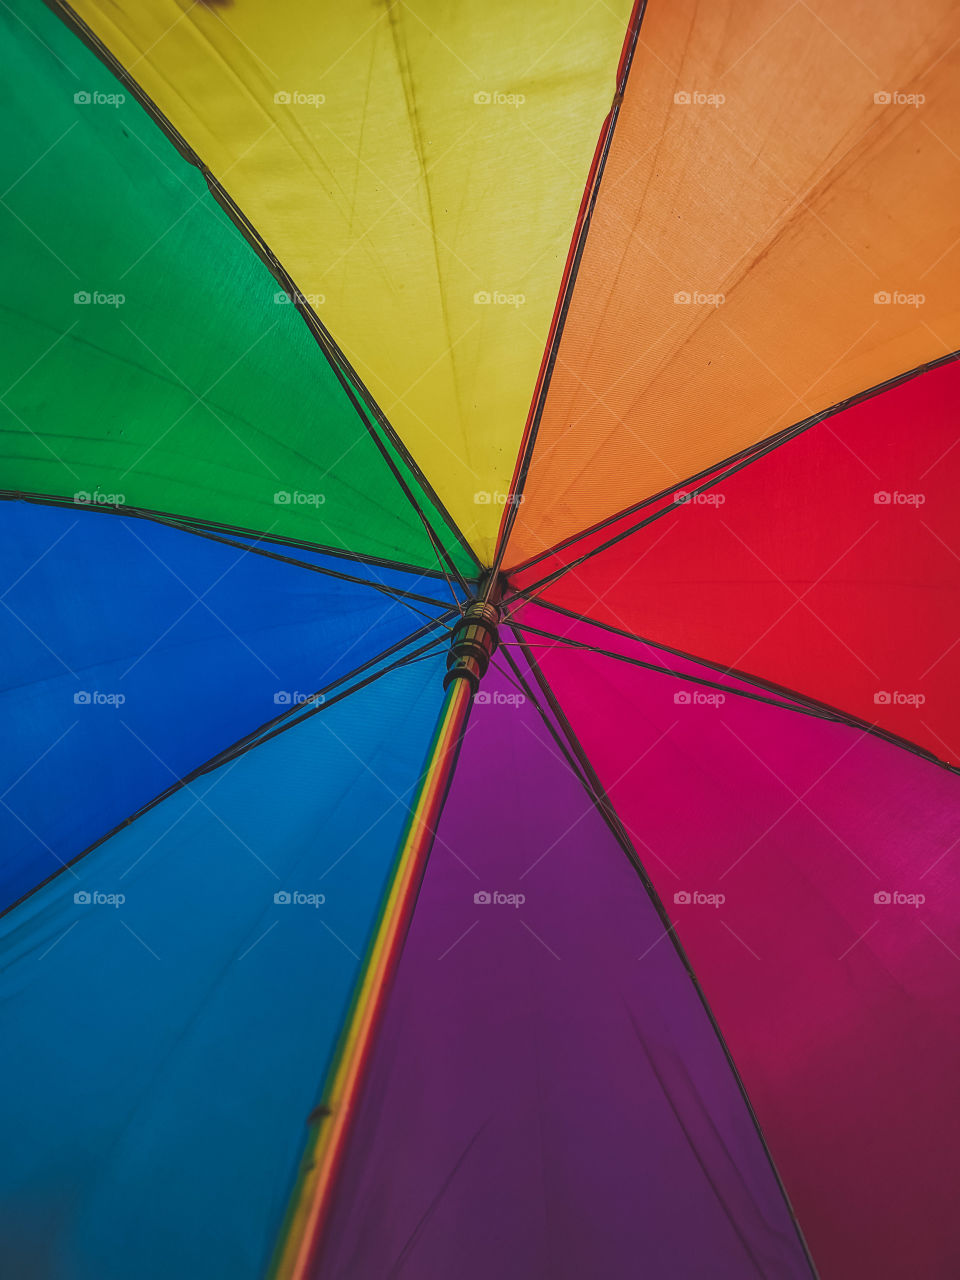 Ombrella